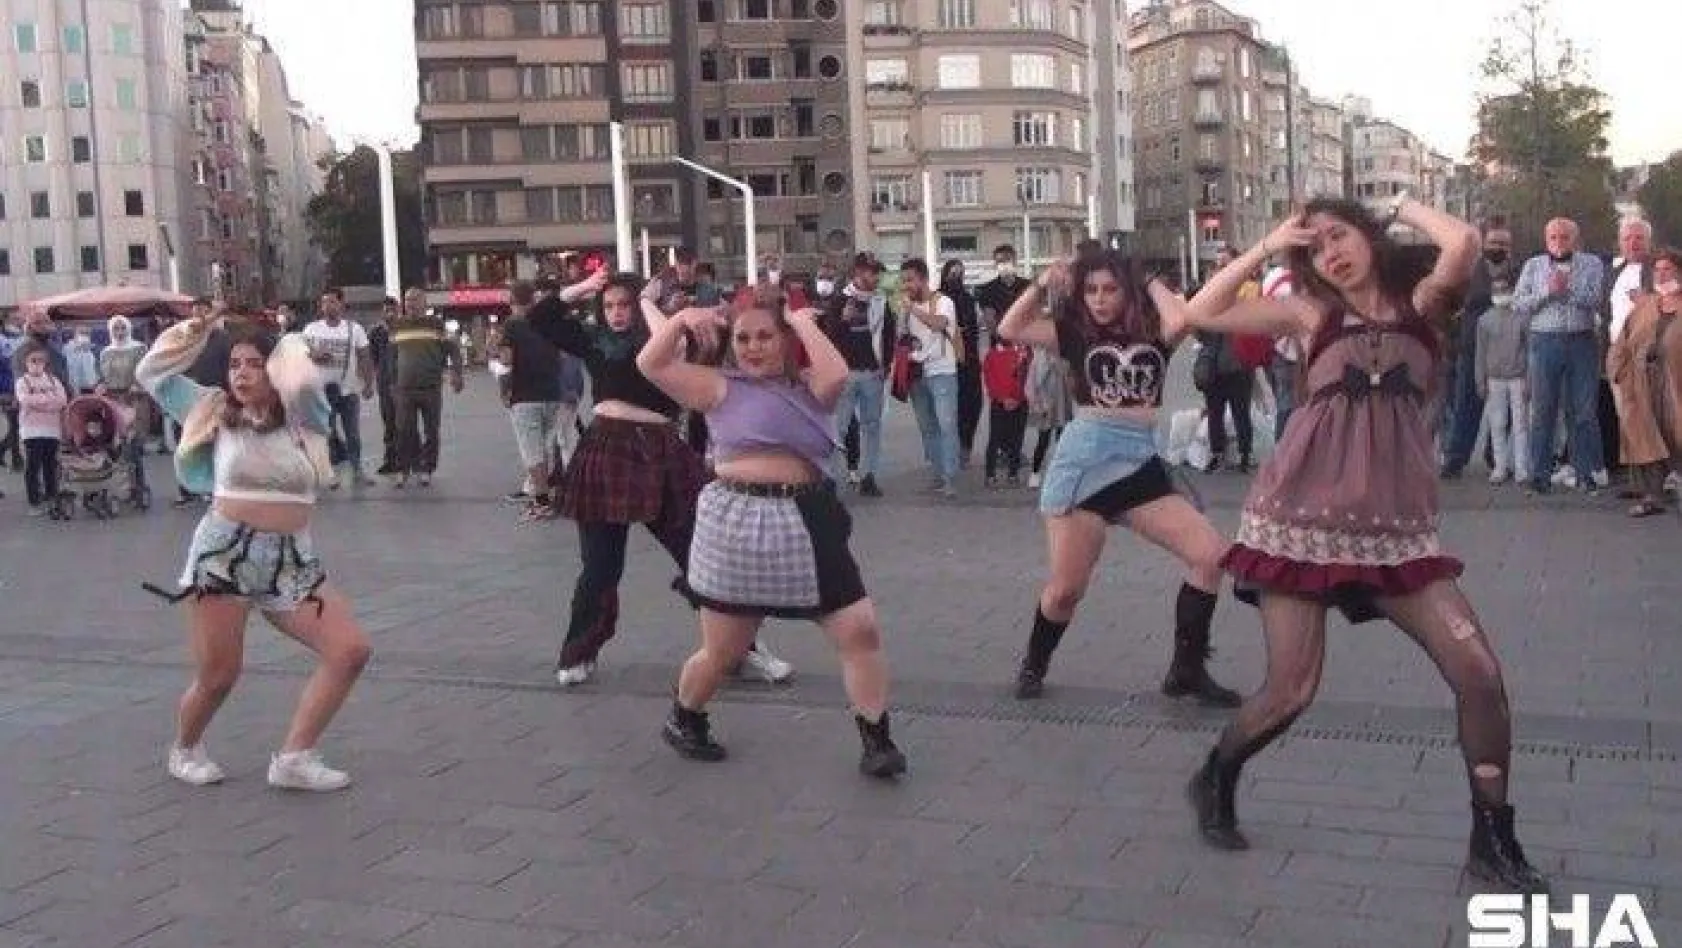 (ÖZEL) Taksim'de dans eden youtuberlara vatandaştan yoğun ilgi